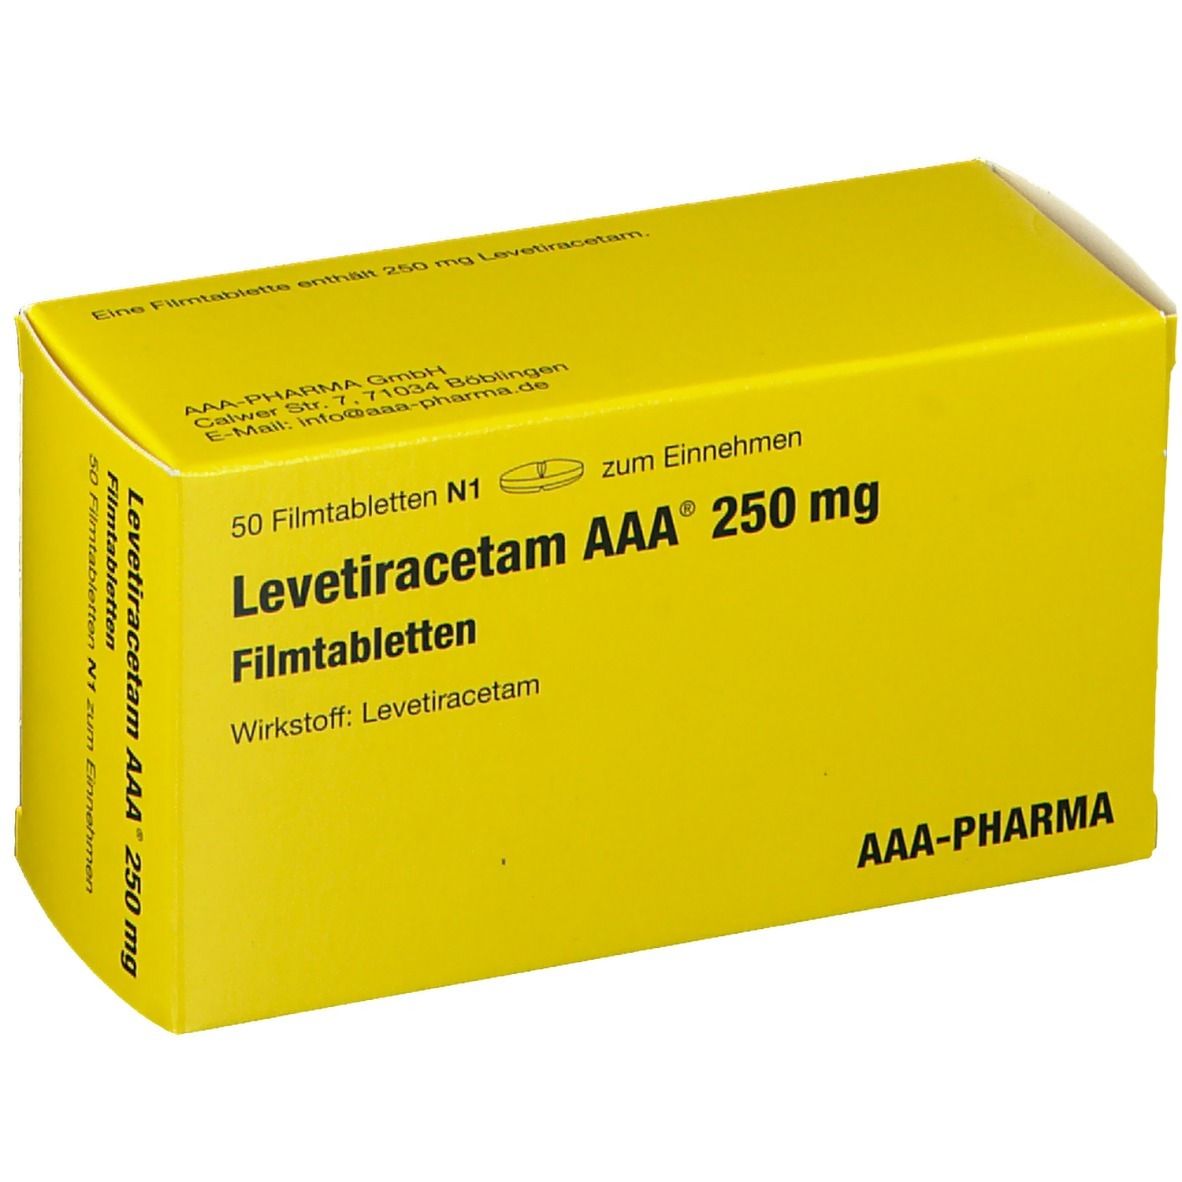 Levetiracetam AAA® 250 mg